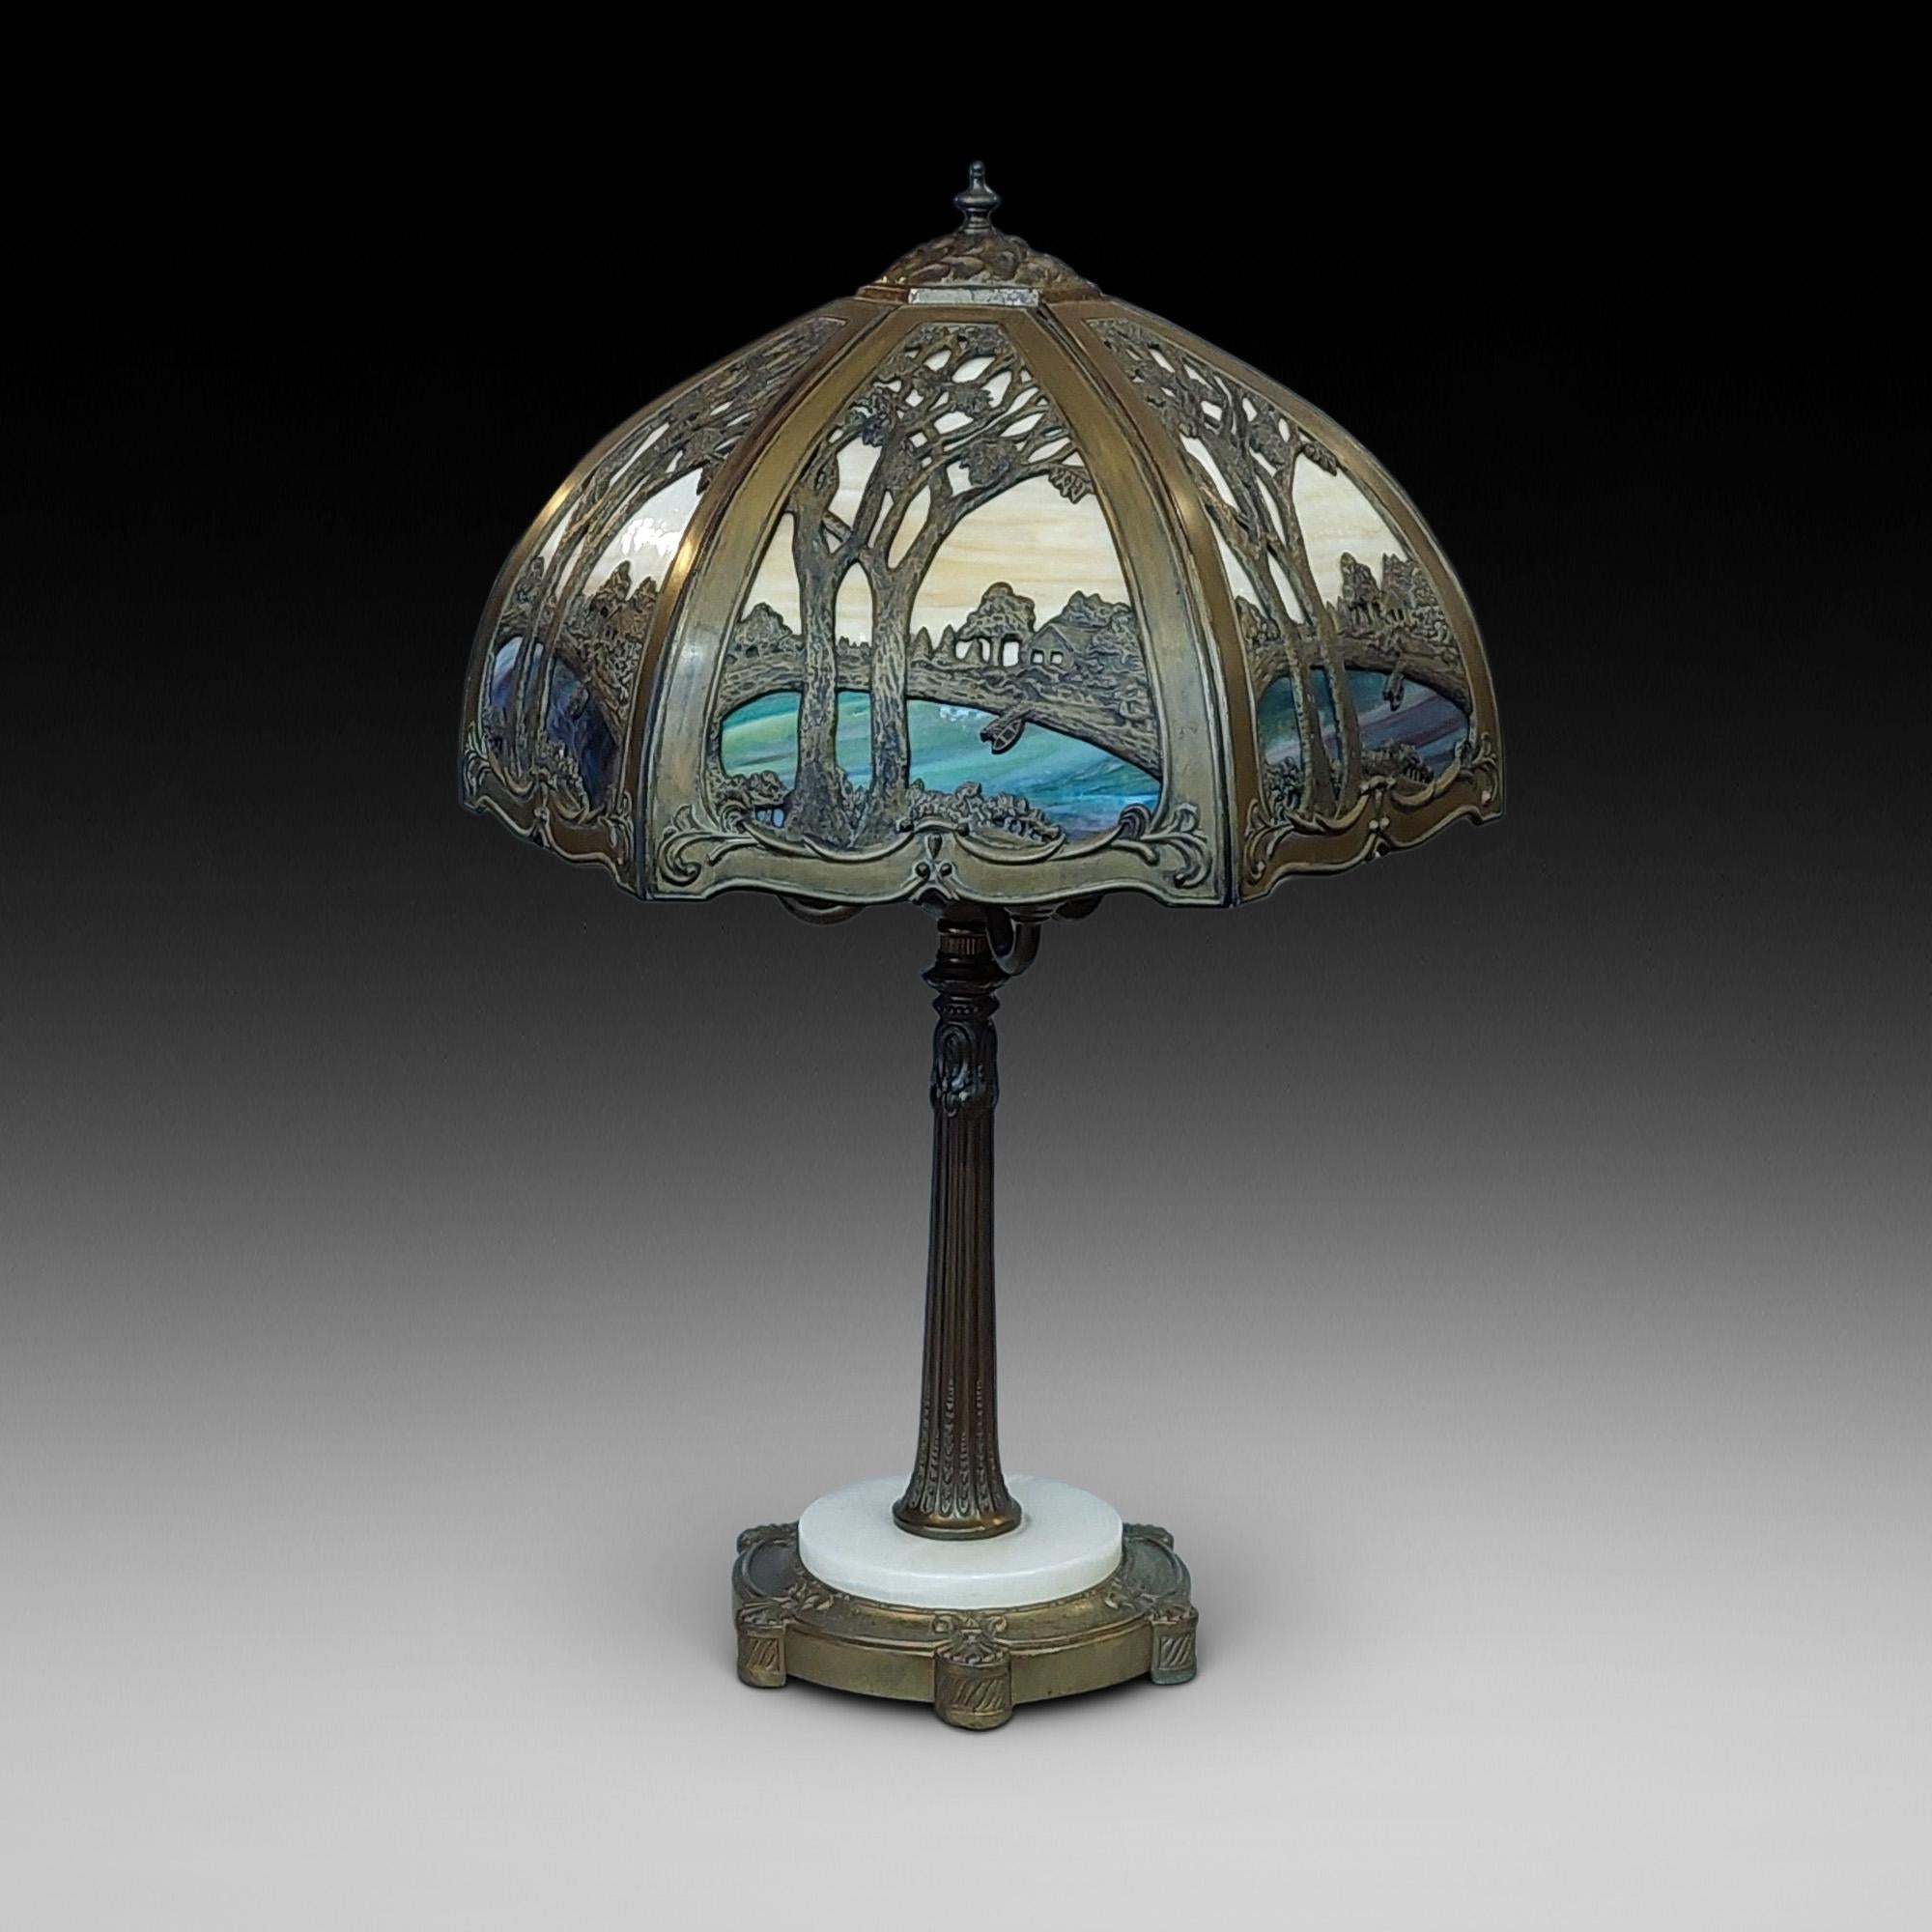 Mid Century Stained Glass Table Lamp, in Galle Art Nouveau Style, der Schatten arbeitete mit Landschaften über einem vergoldeten Zinn reeded Säule Basis mit drei Lampen - ArtCraft - New York - gegründet 1955 - 19 